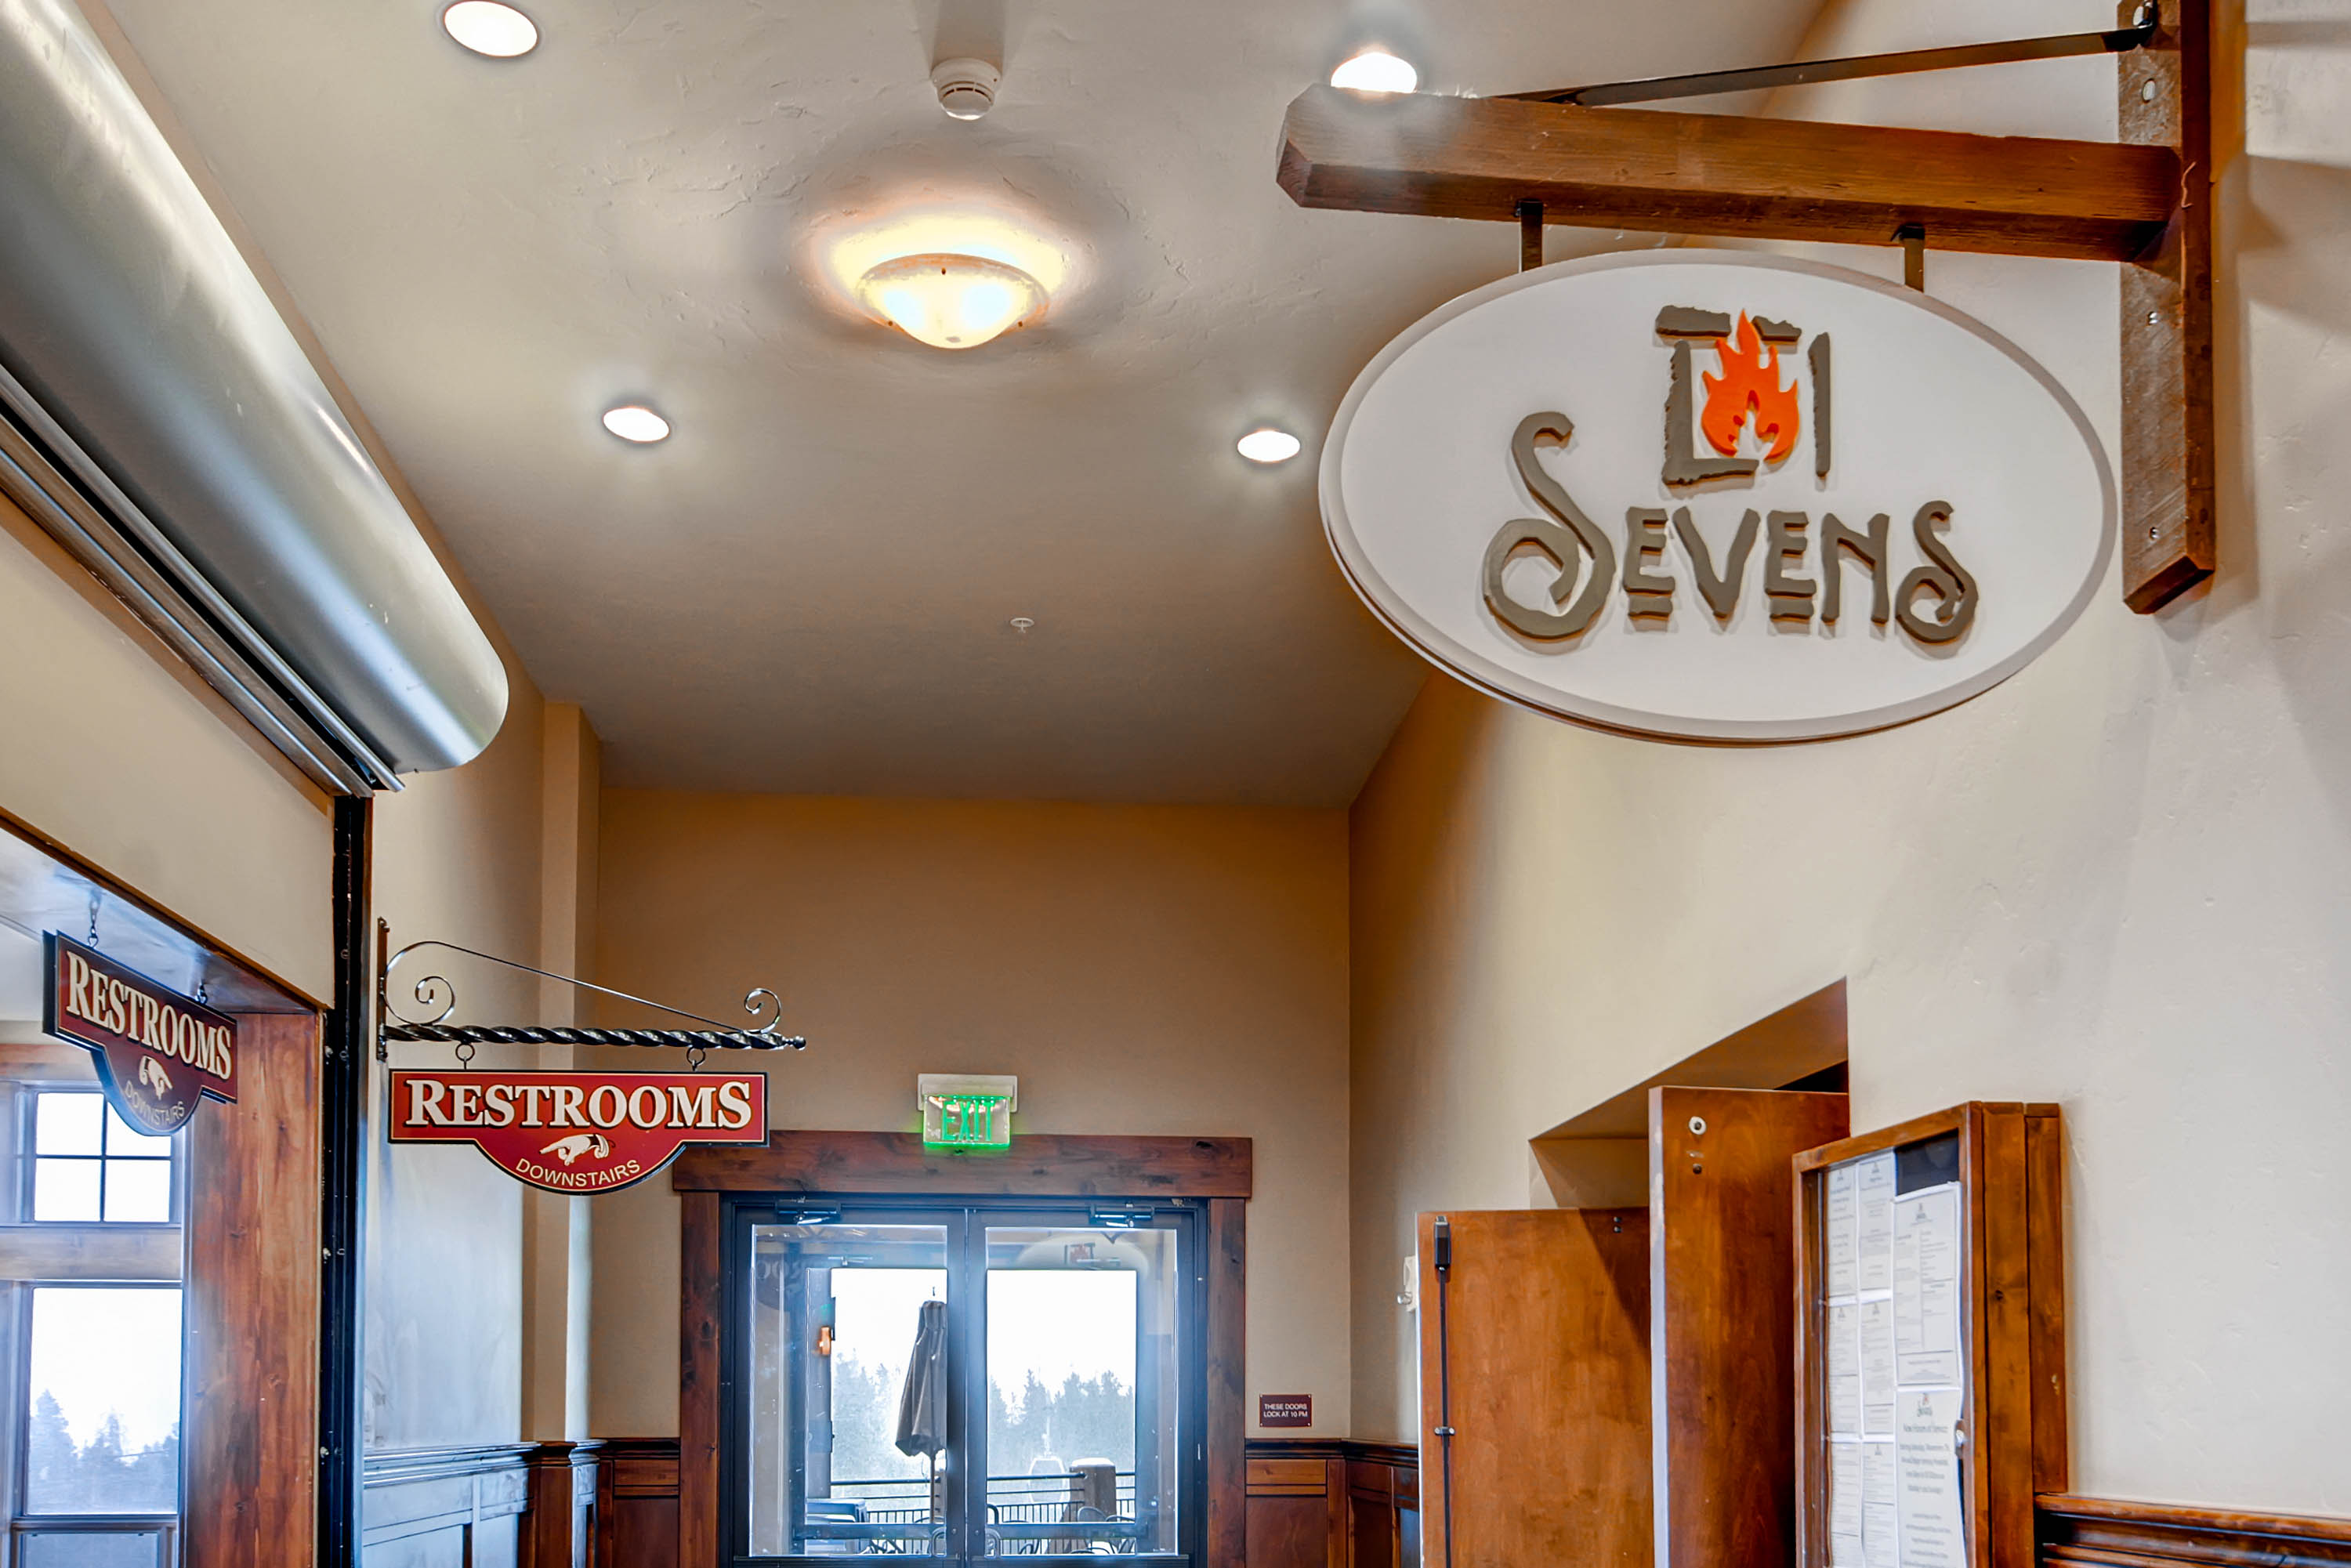 Sevens restaurant